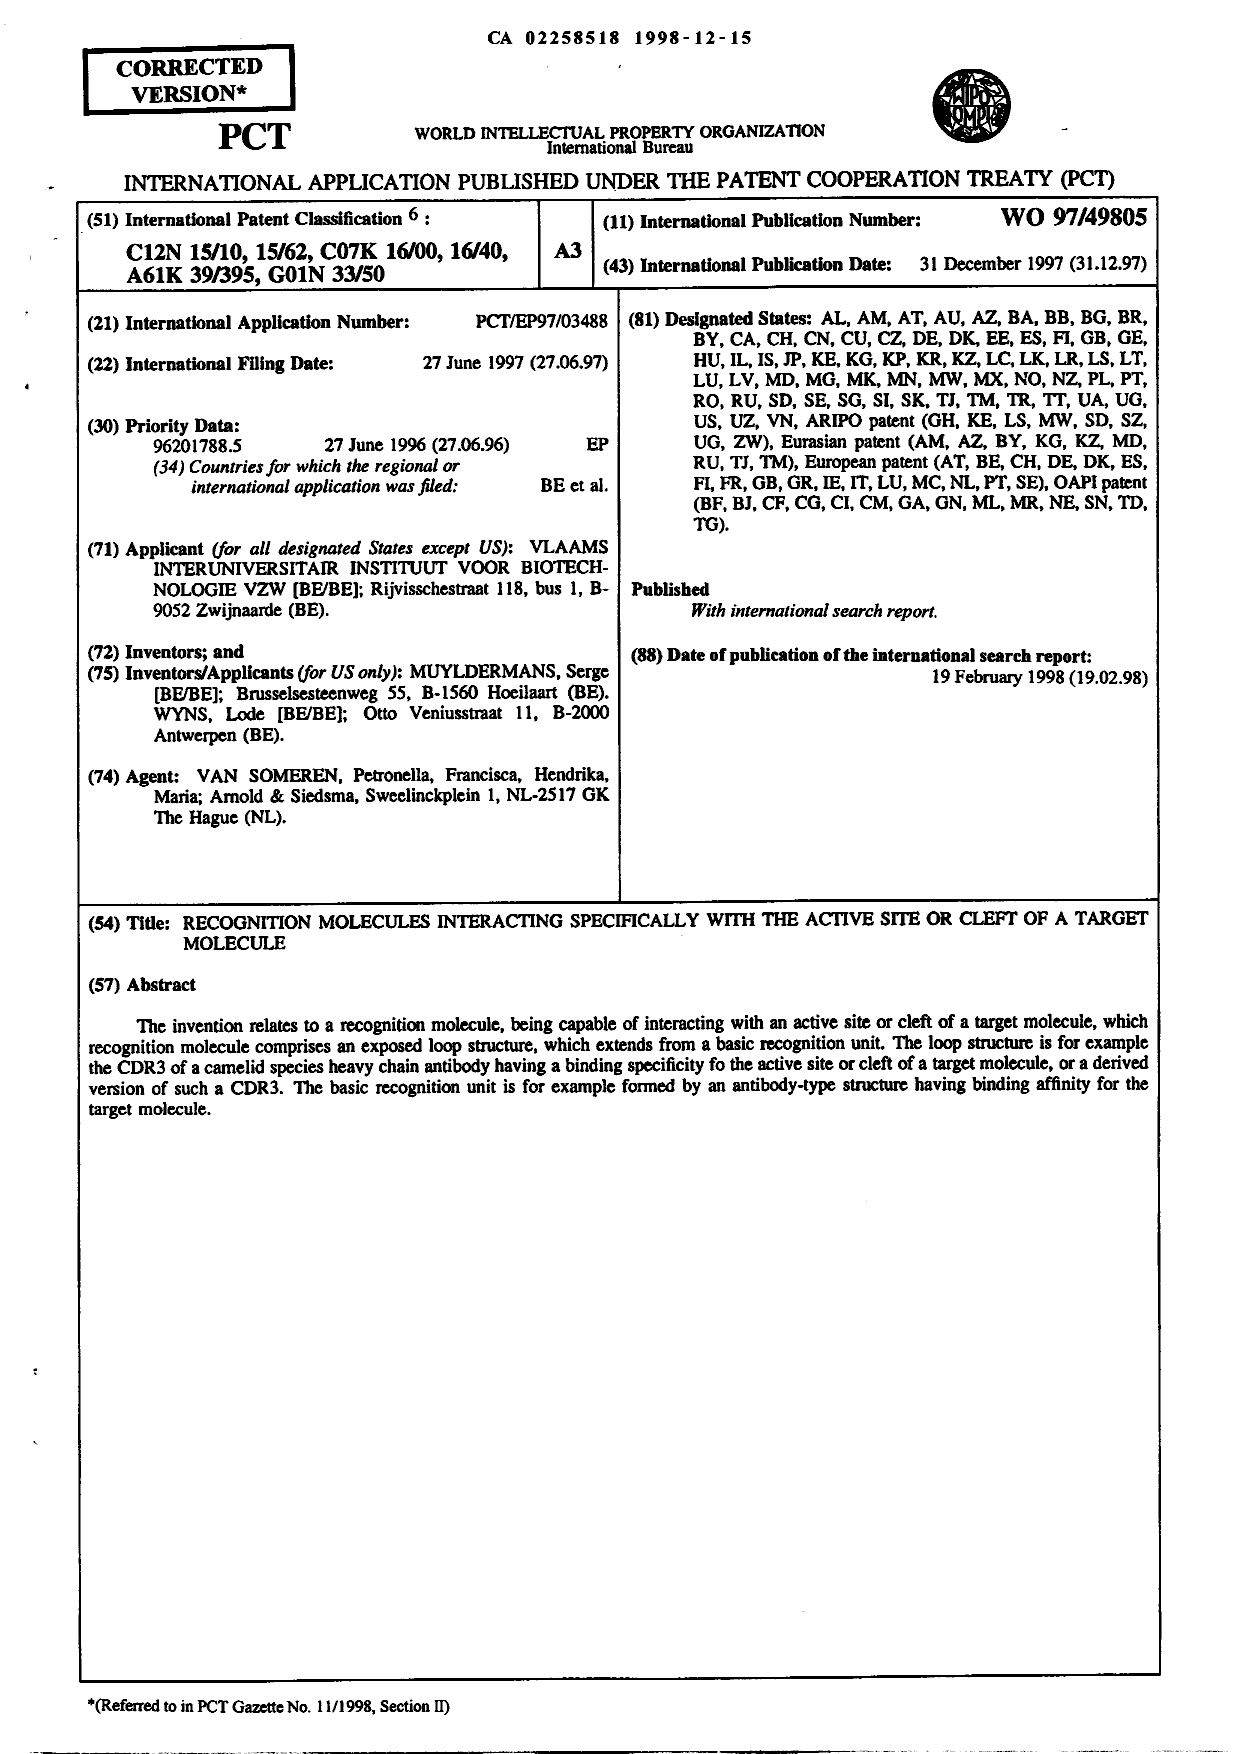 Document de brevet canadien 2258518. Abrégé 19981215. Image 1 de 1